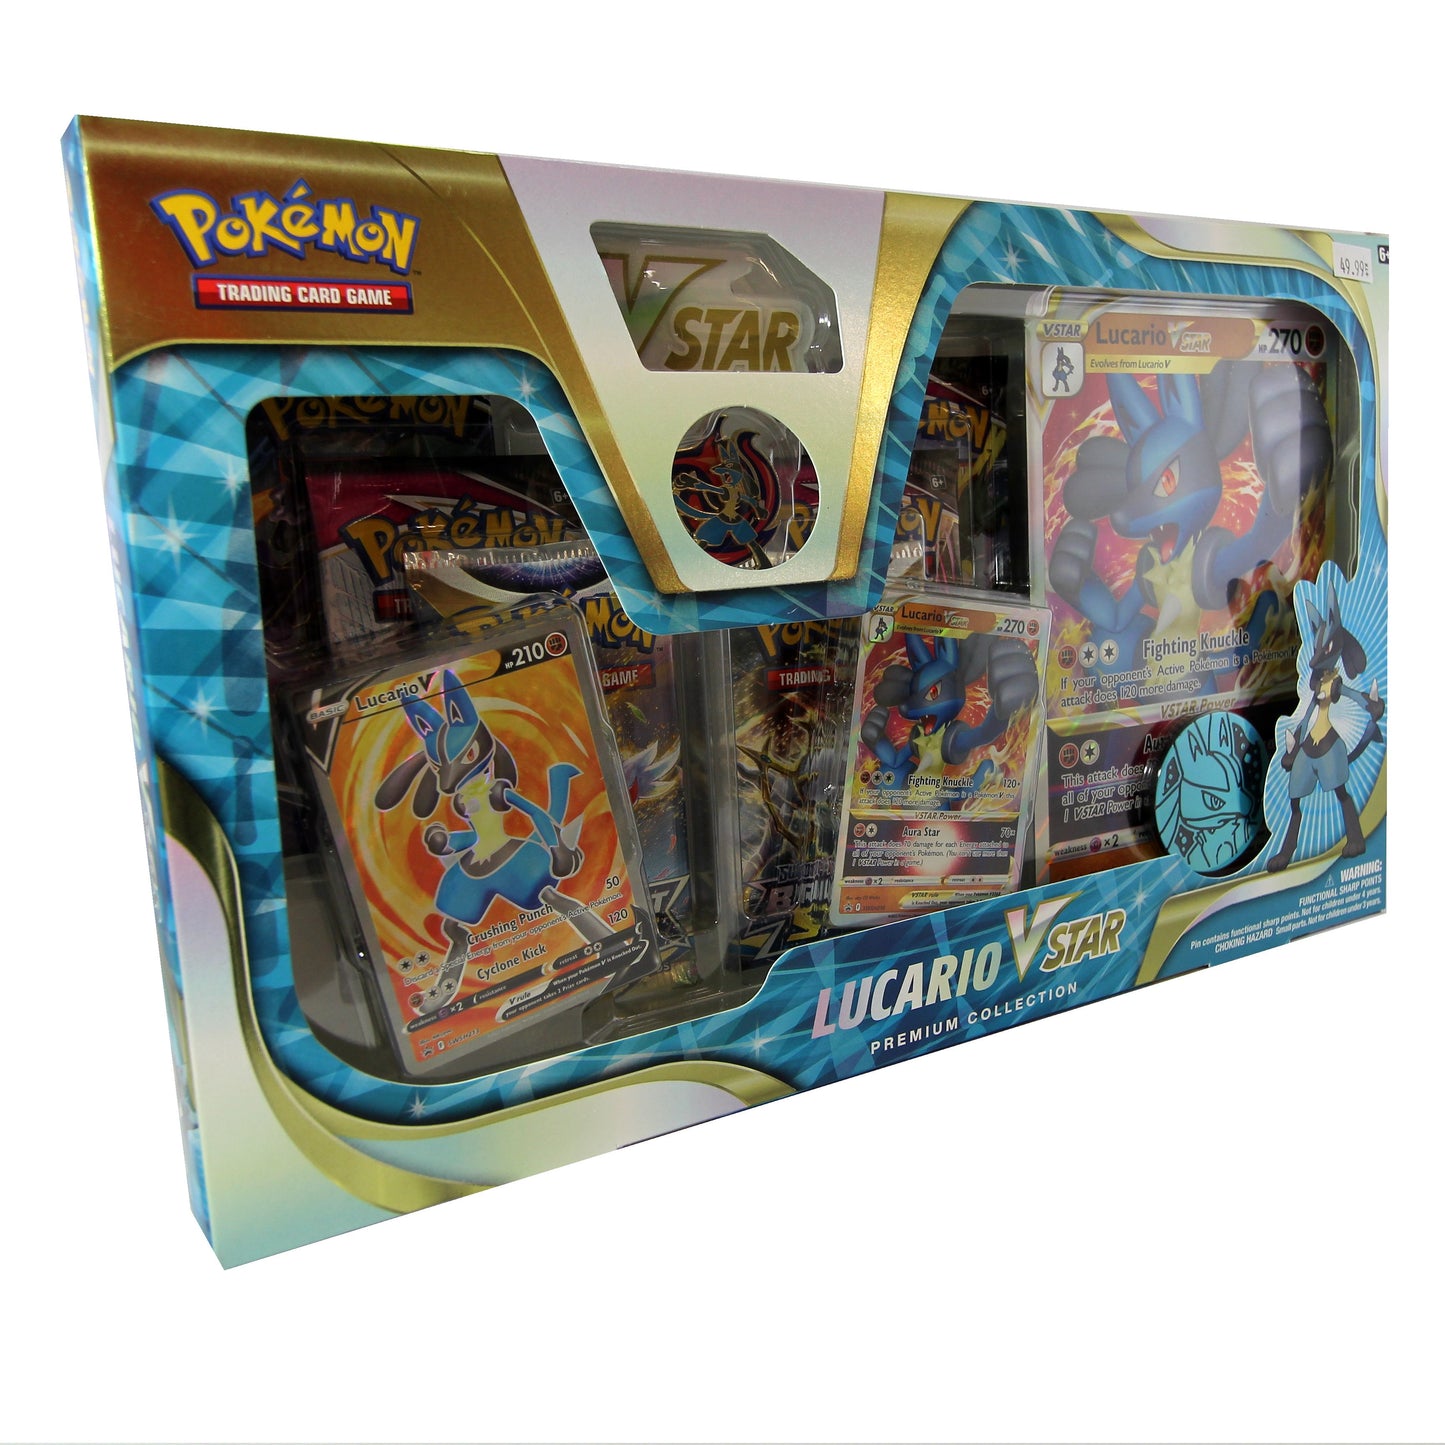 Pokémon Lucario V Star Premium Collection Gift Box